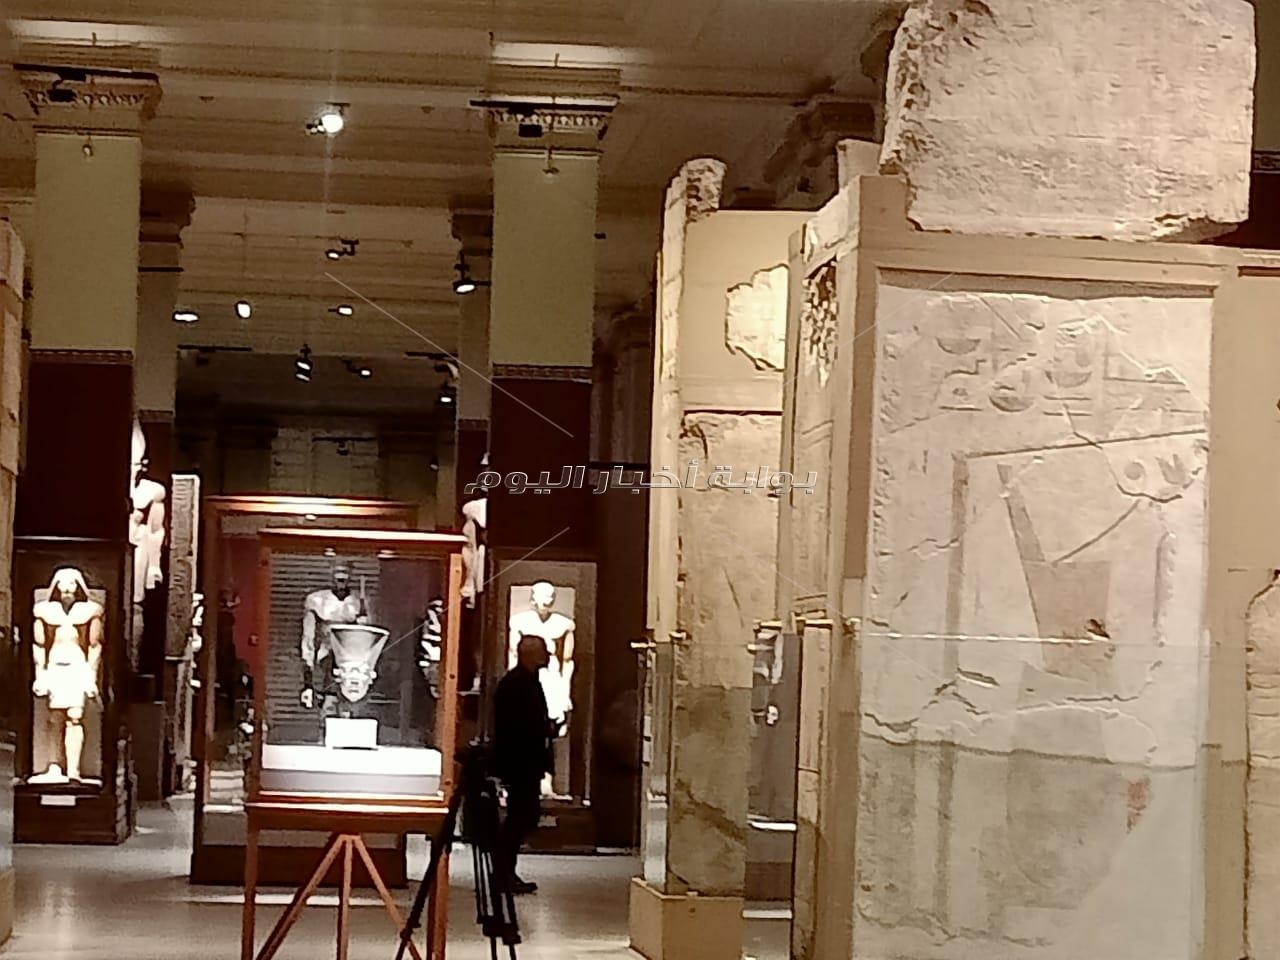 مشروع تطوير سيناريو العرض المتحفي في المتحف المصري بالتحرير  